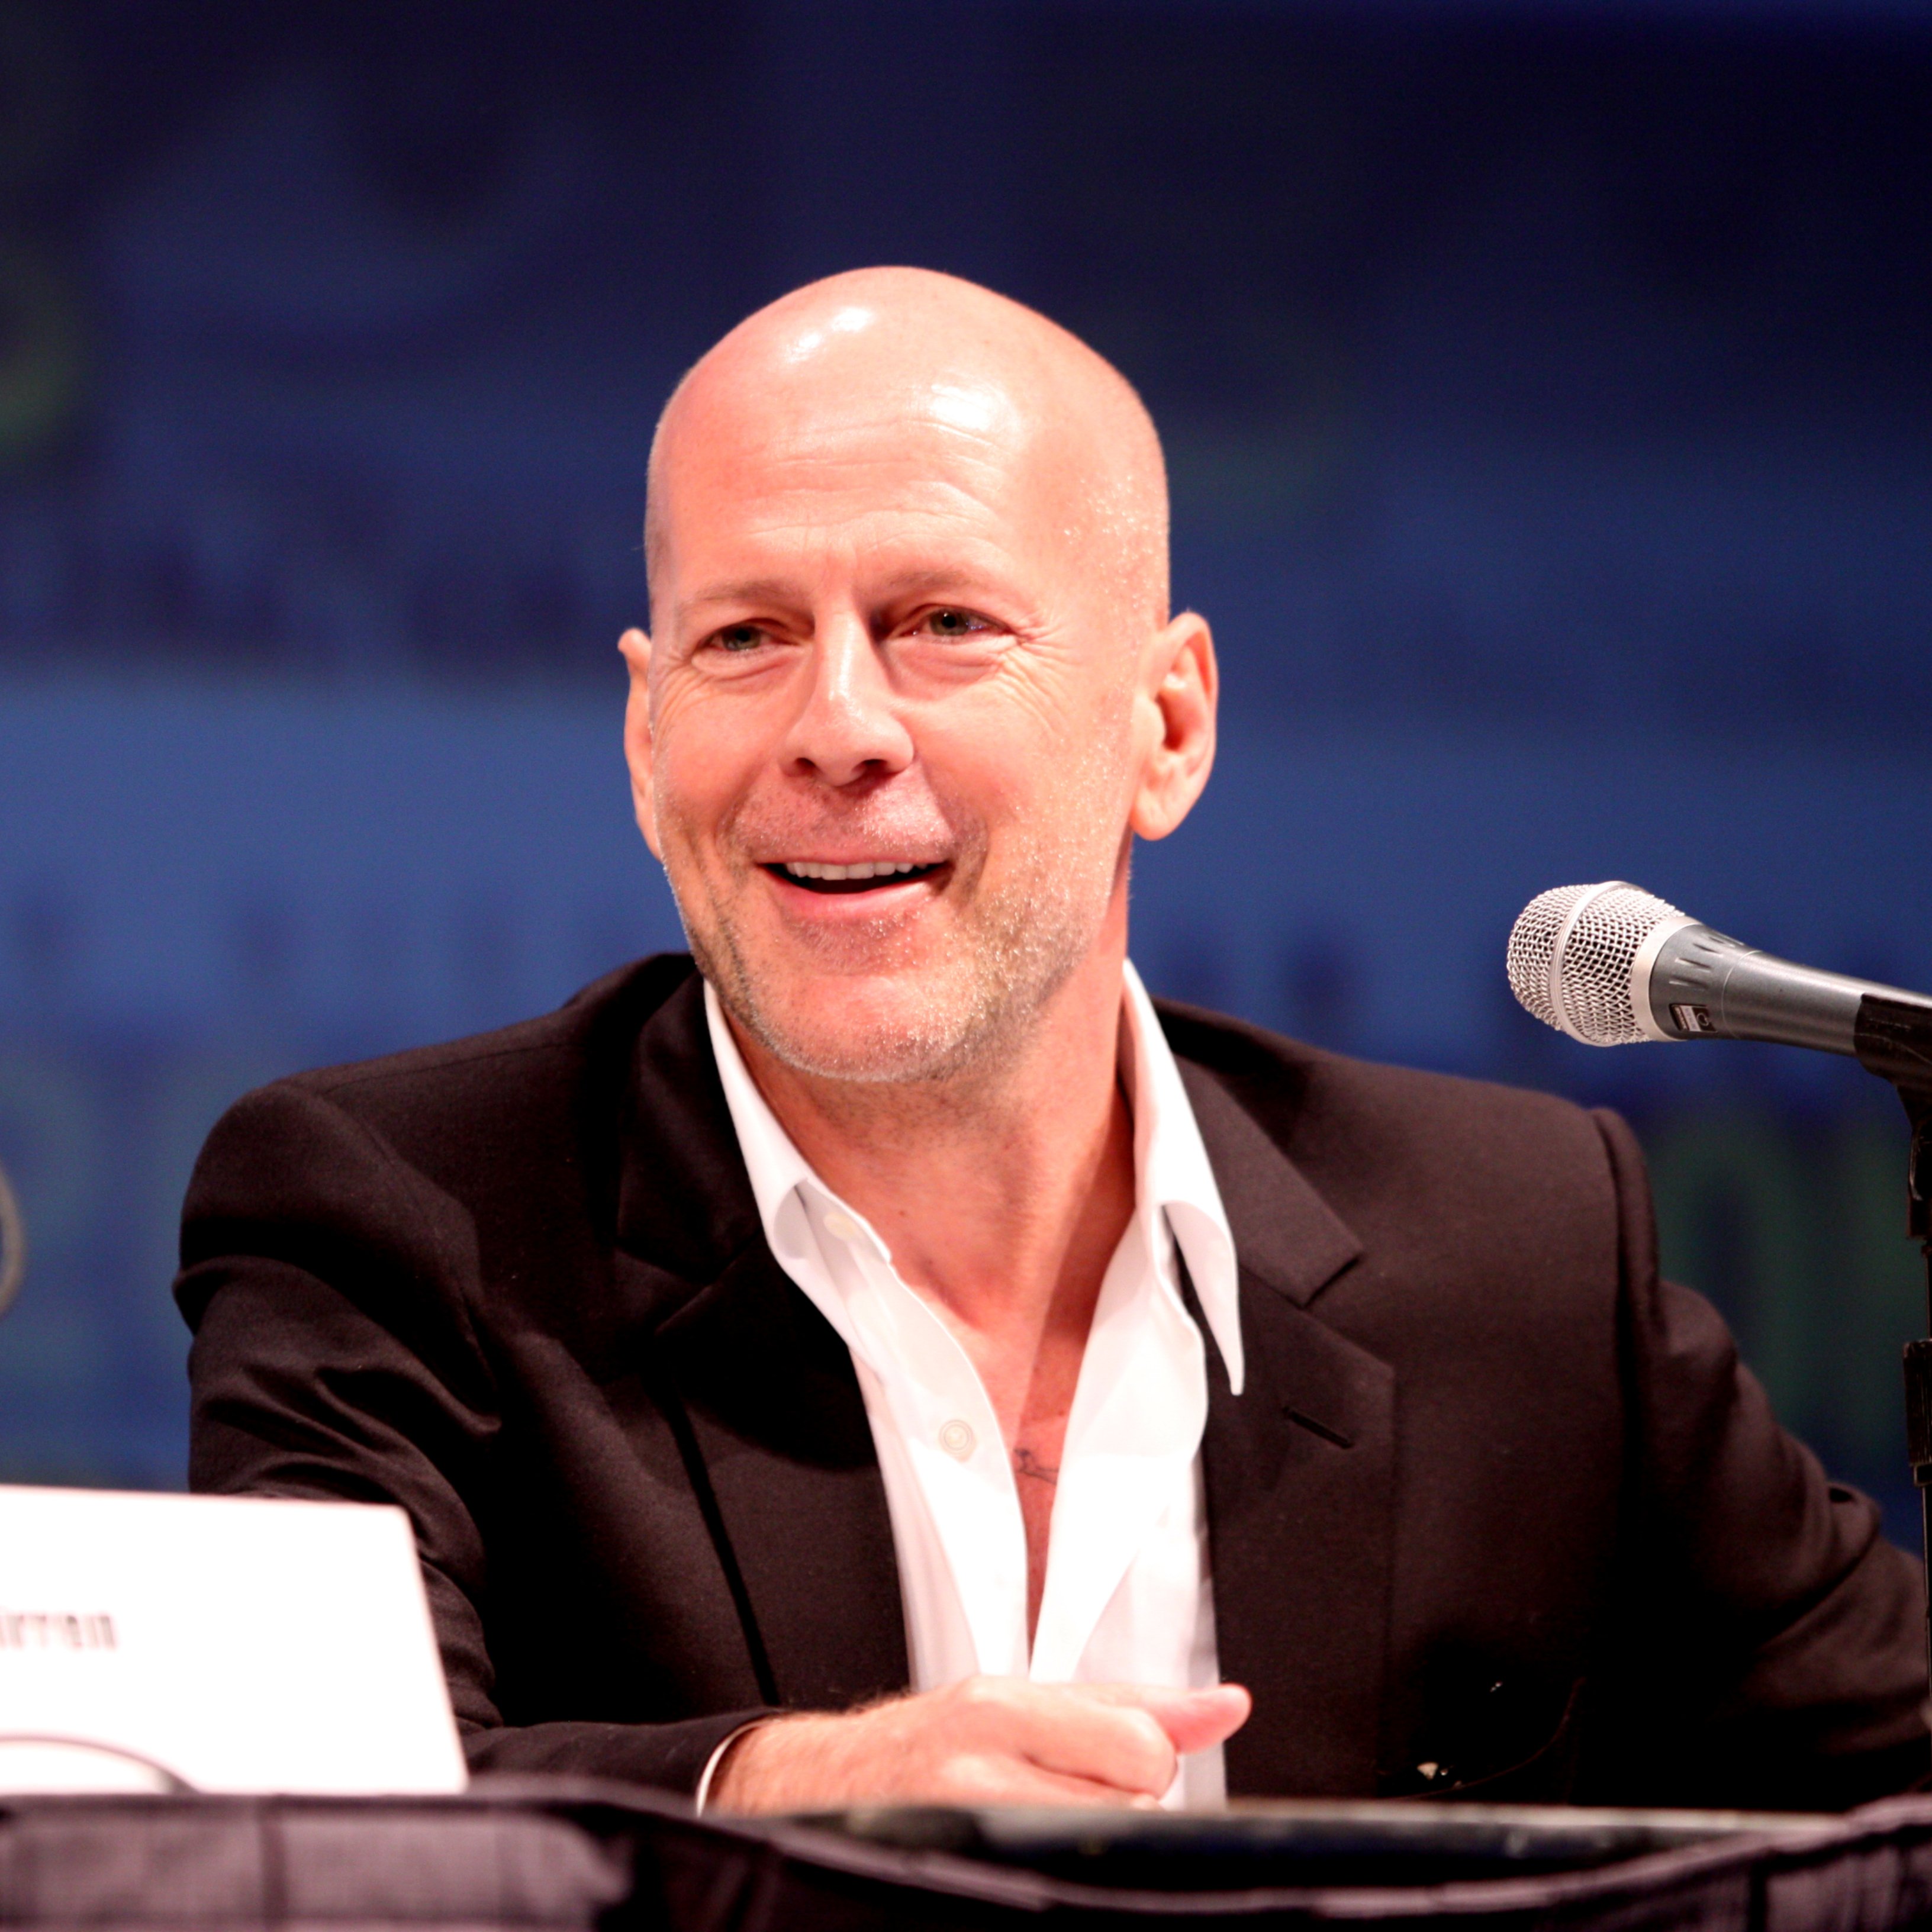 Fotografían a Bruce Willis después de anunciar que sufre afasia, así es su nueva vida